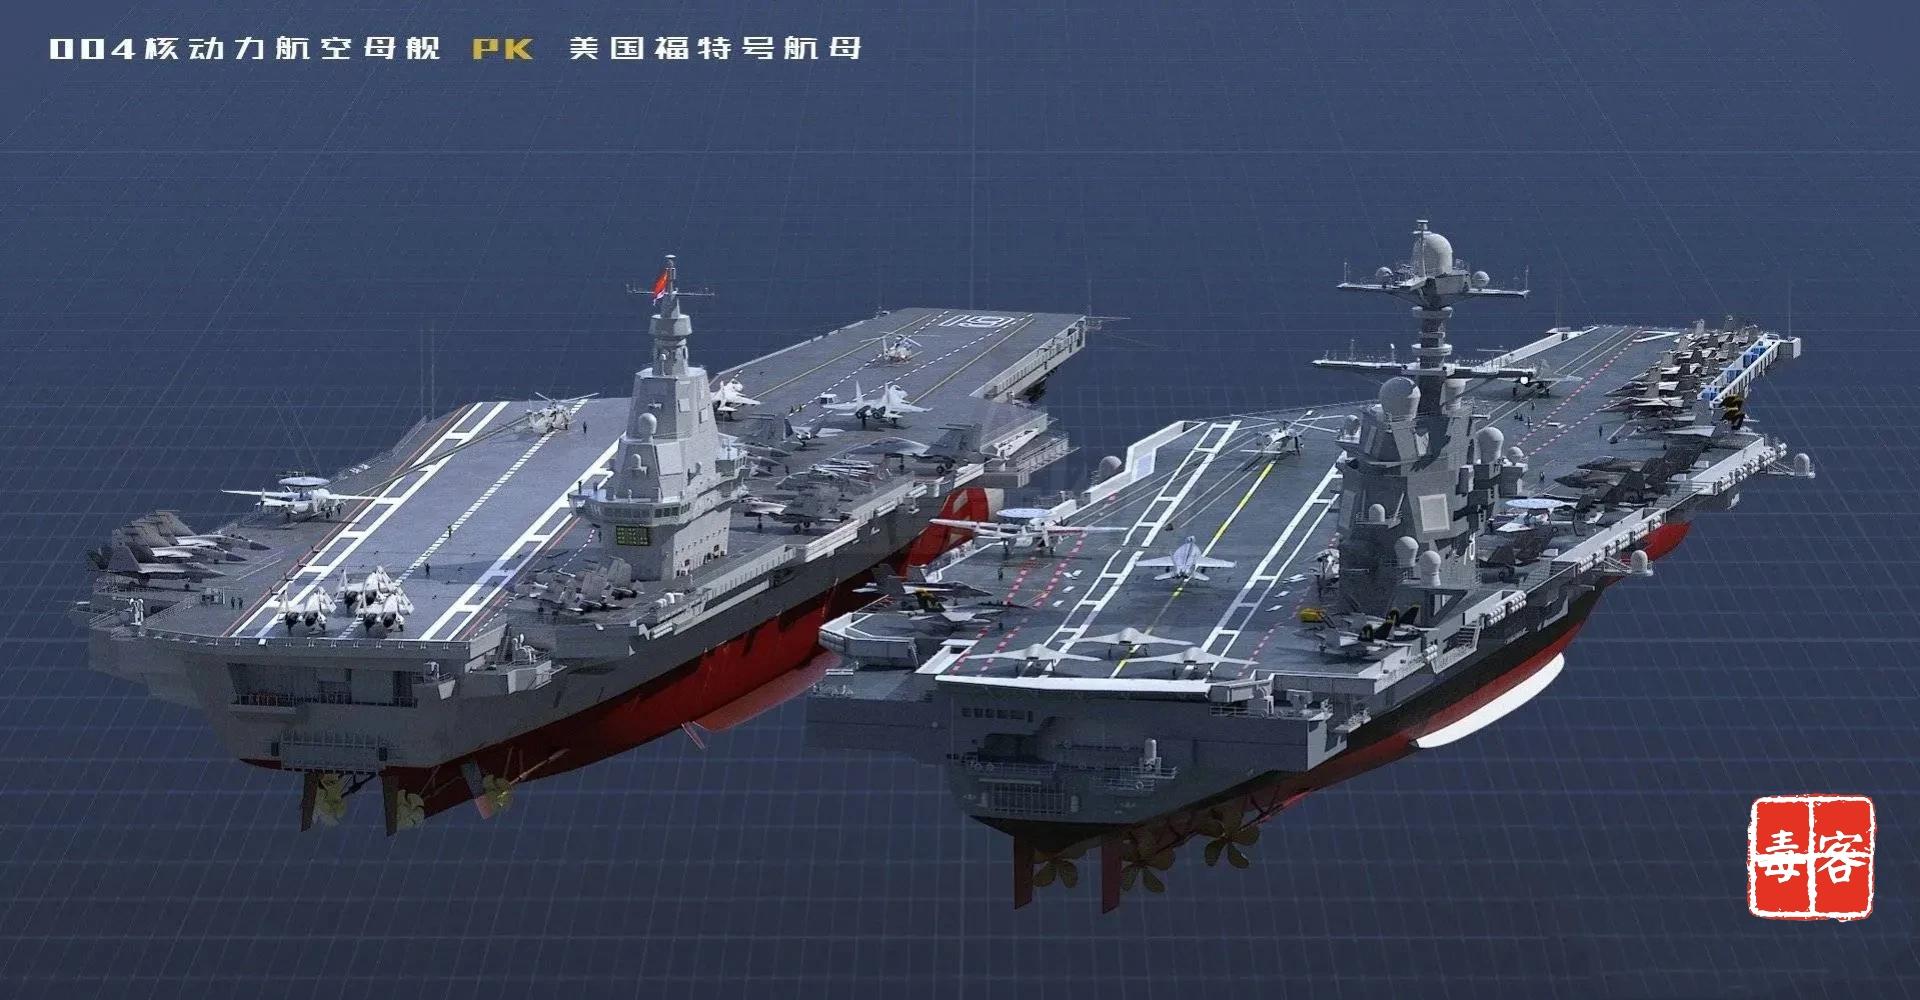 「核子怪兽还是常规霸主」——第四艘航母将公布,进入新纪元的中国